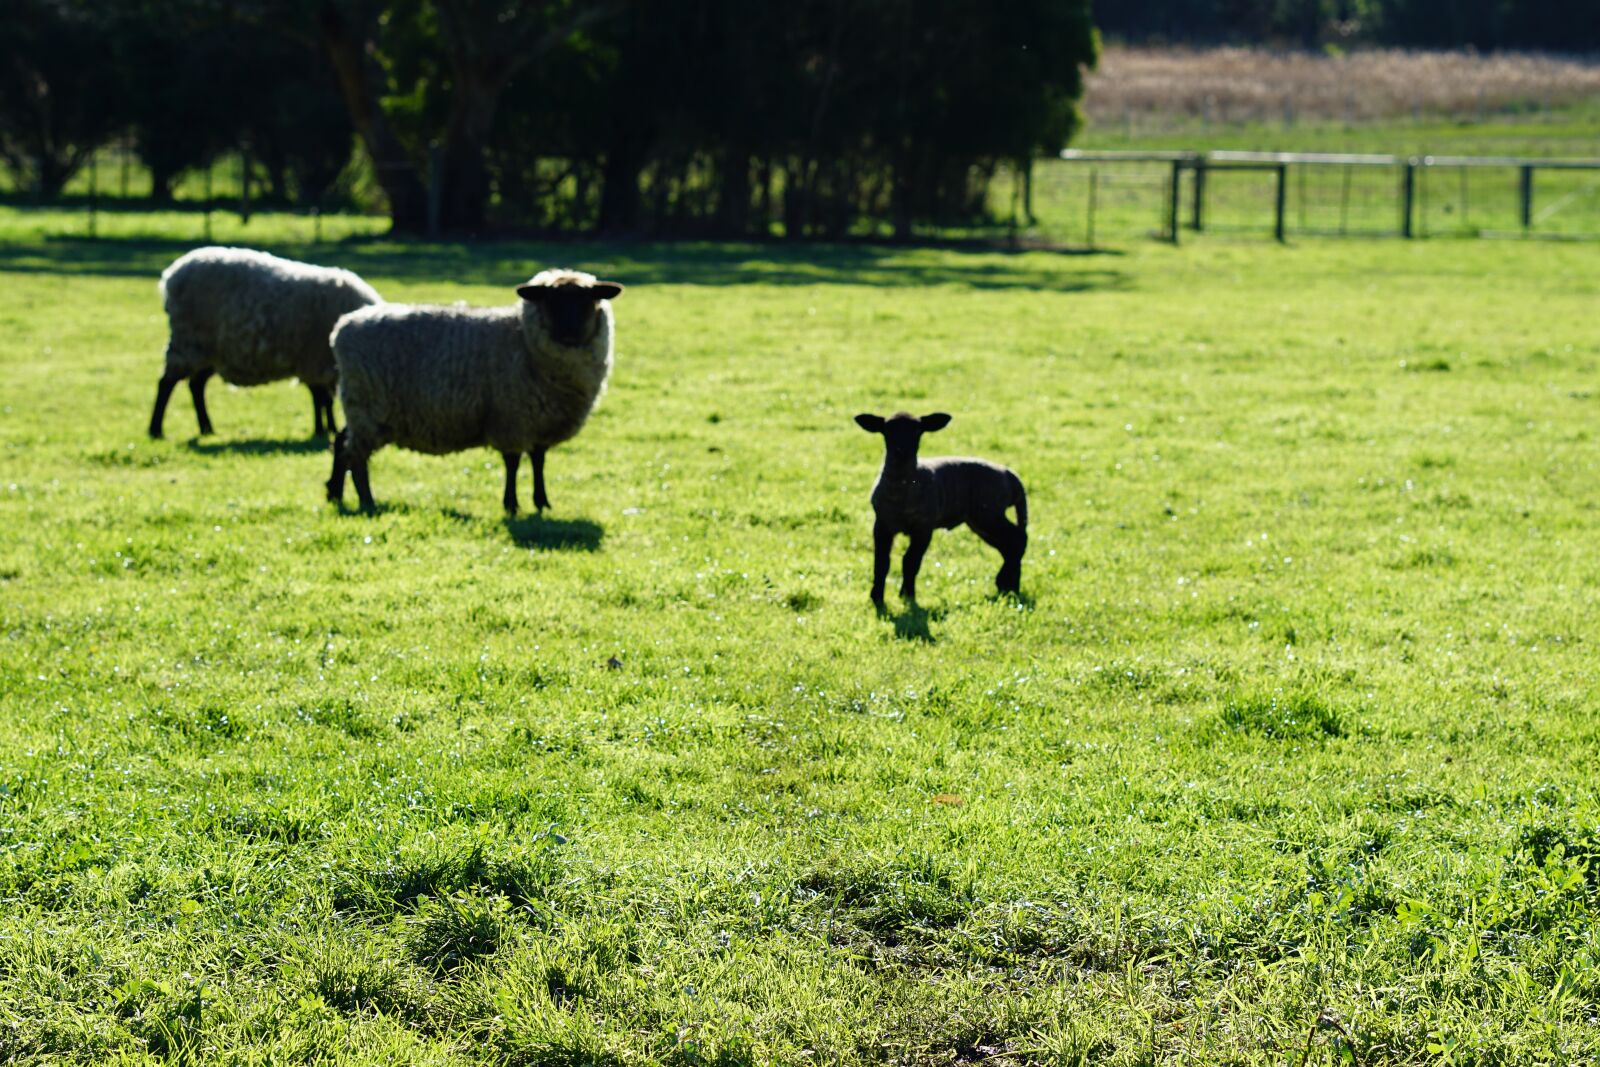 Sony FE 85mm F1.8 sample photo. Farm, sheep, lamb photography